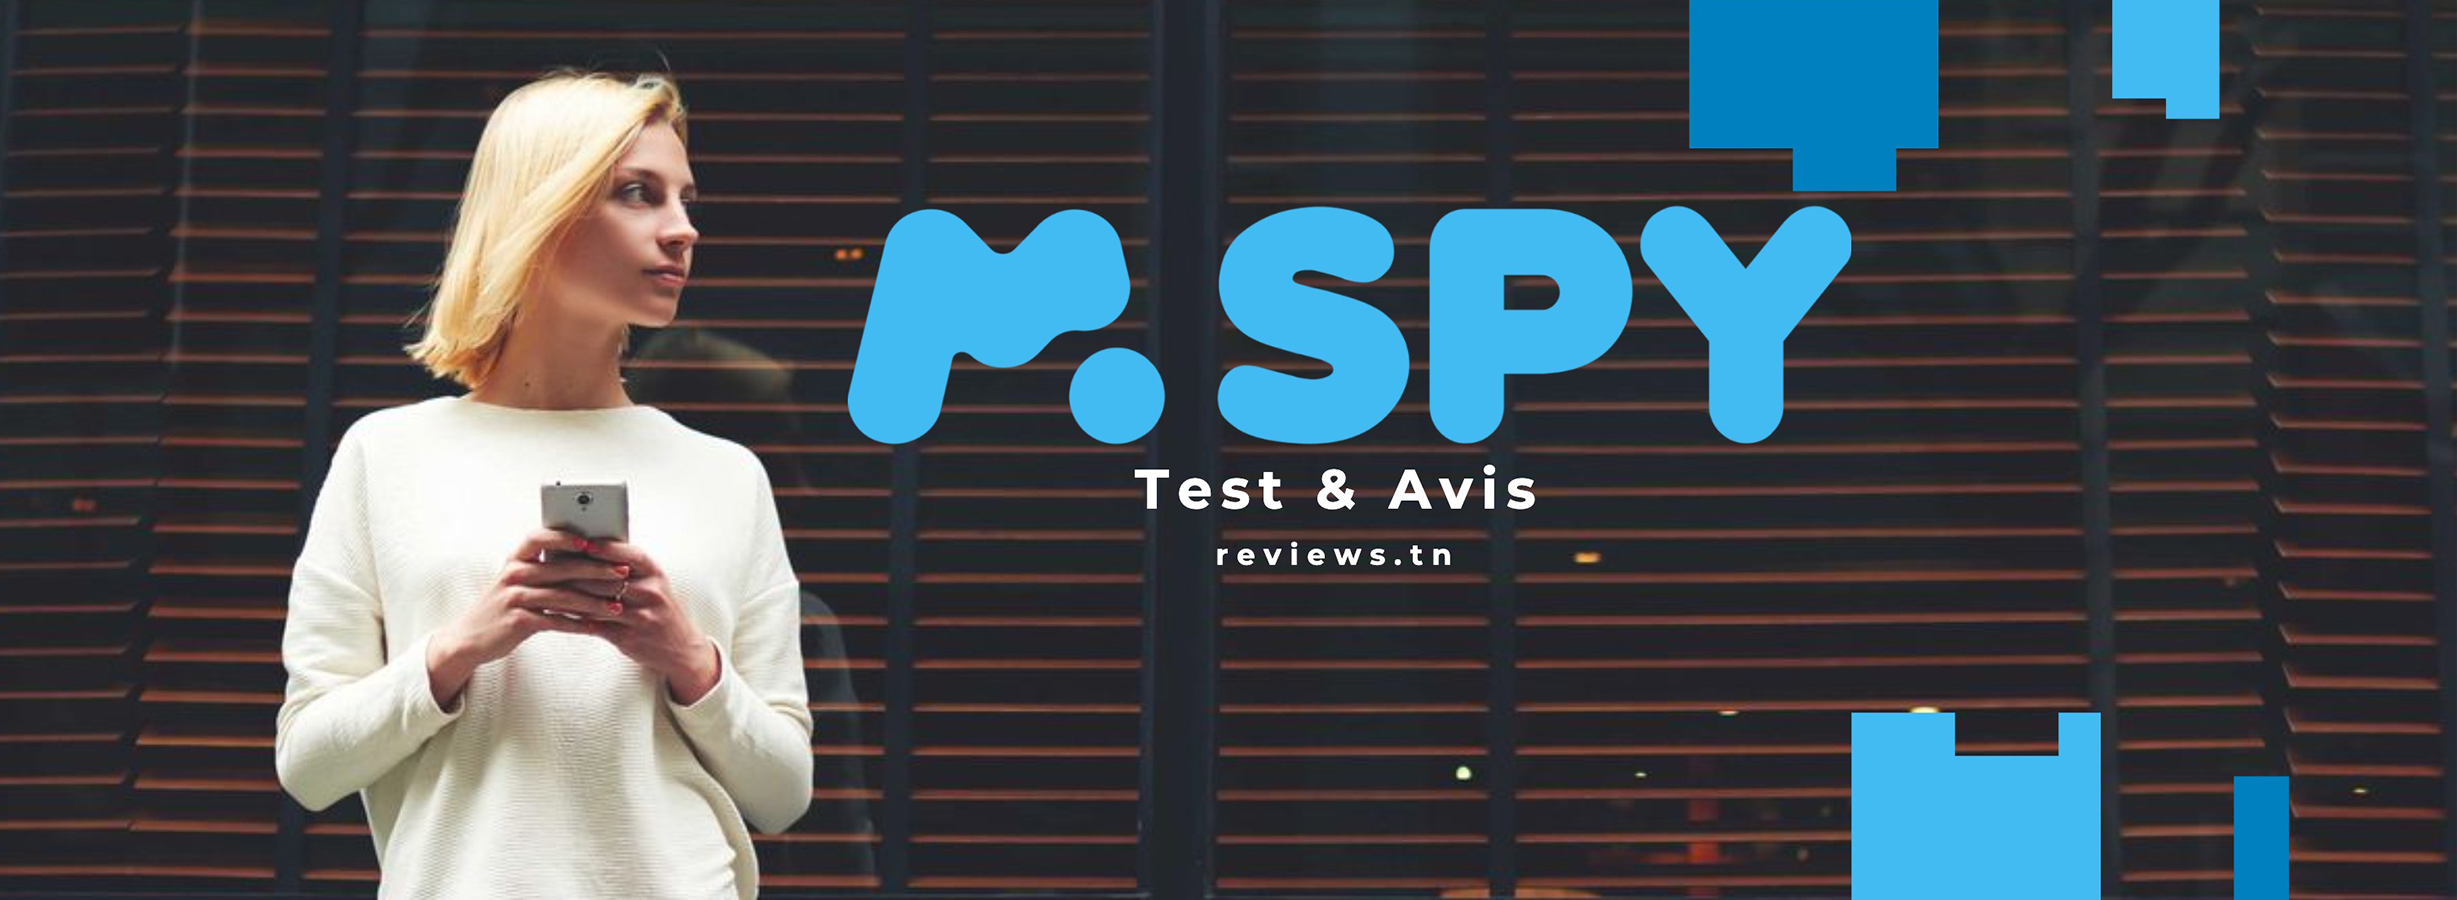 mSpy Review: Izy io ve no Best Mobile Spy Software? Vakio alohan'ny hividianana